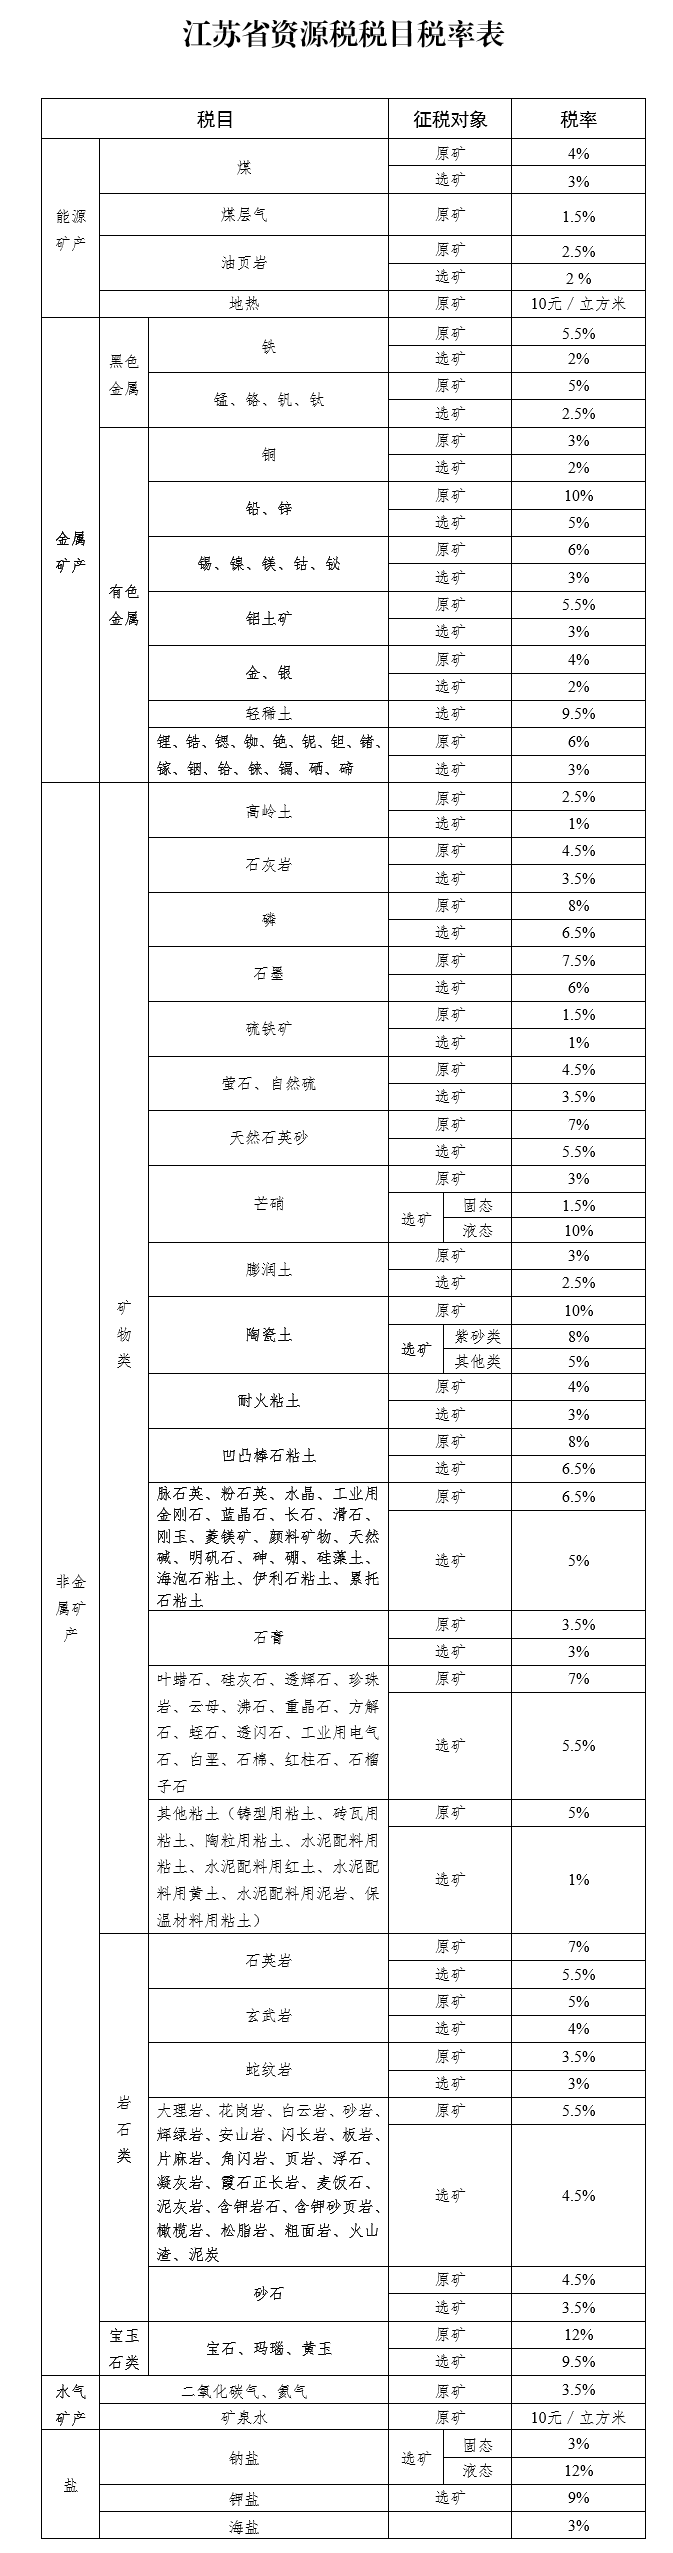 江苏省资源税税目税率表